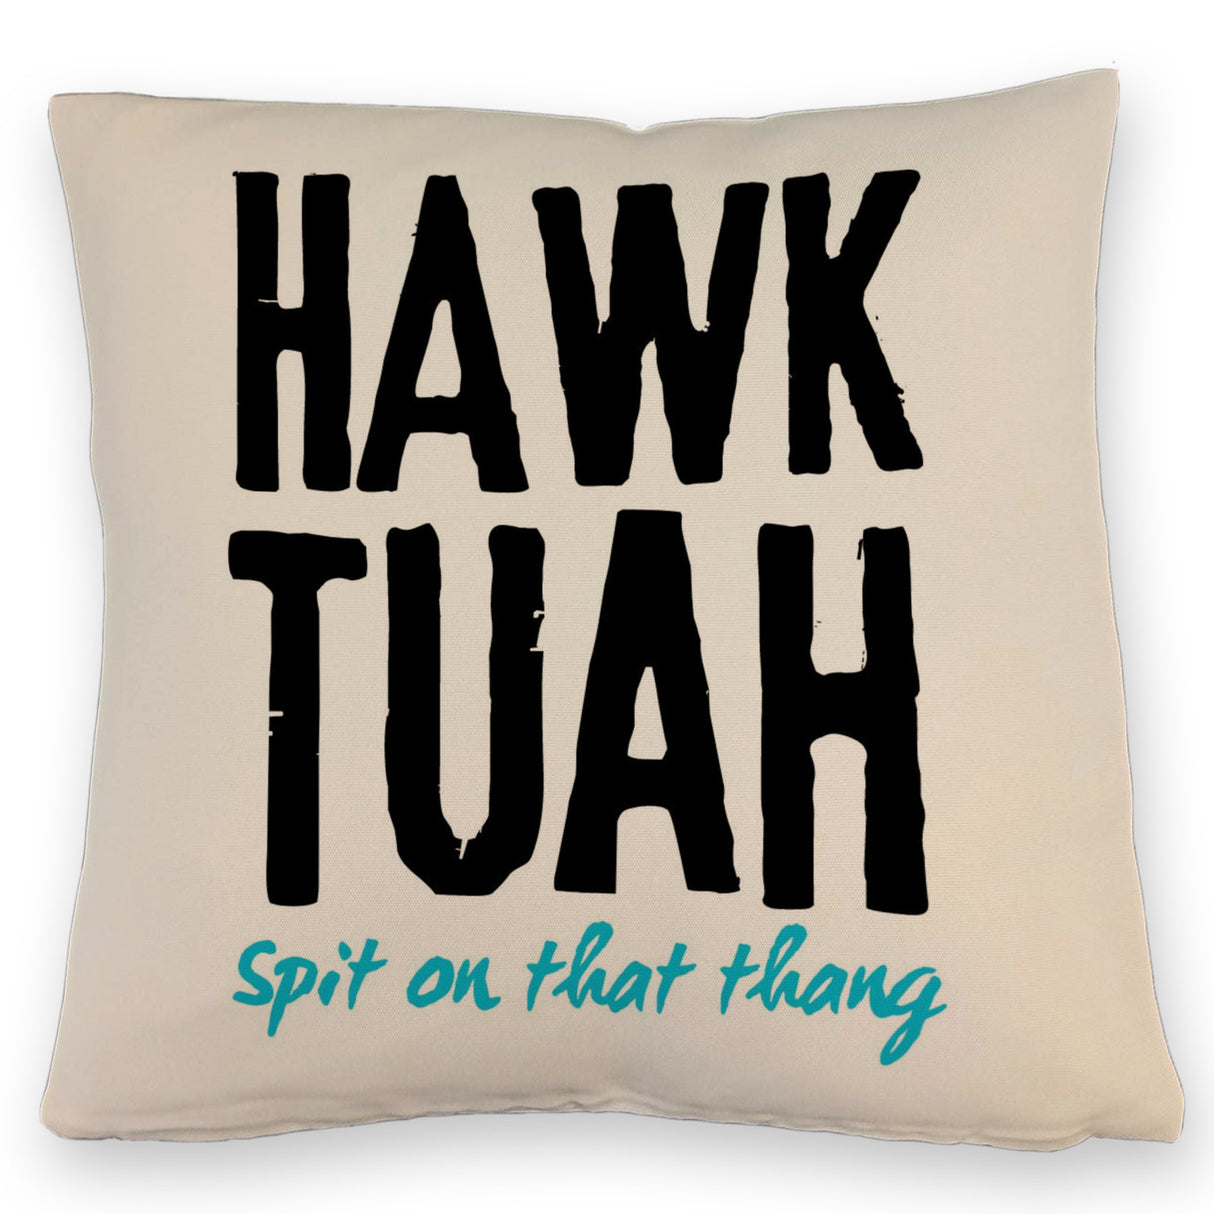 Hawk Tuah Kissen mit Spruch Spit on that thang